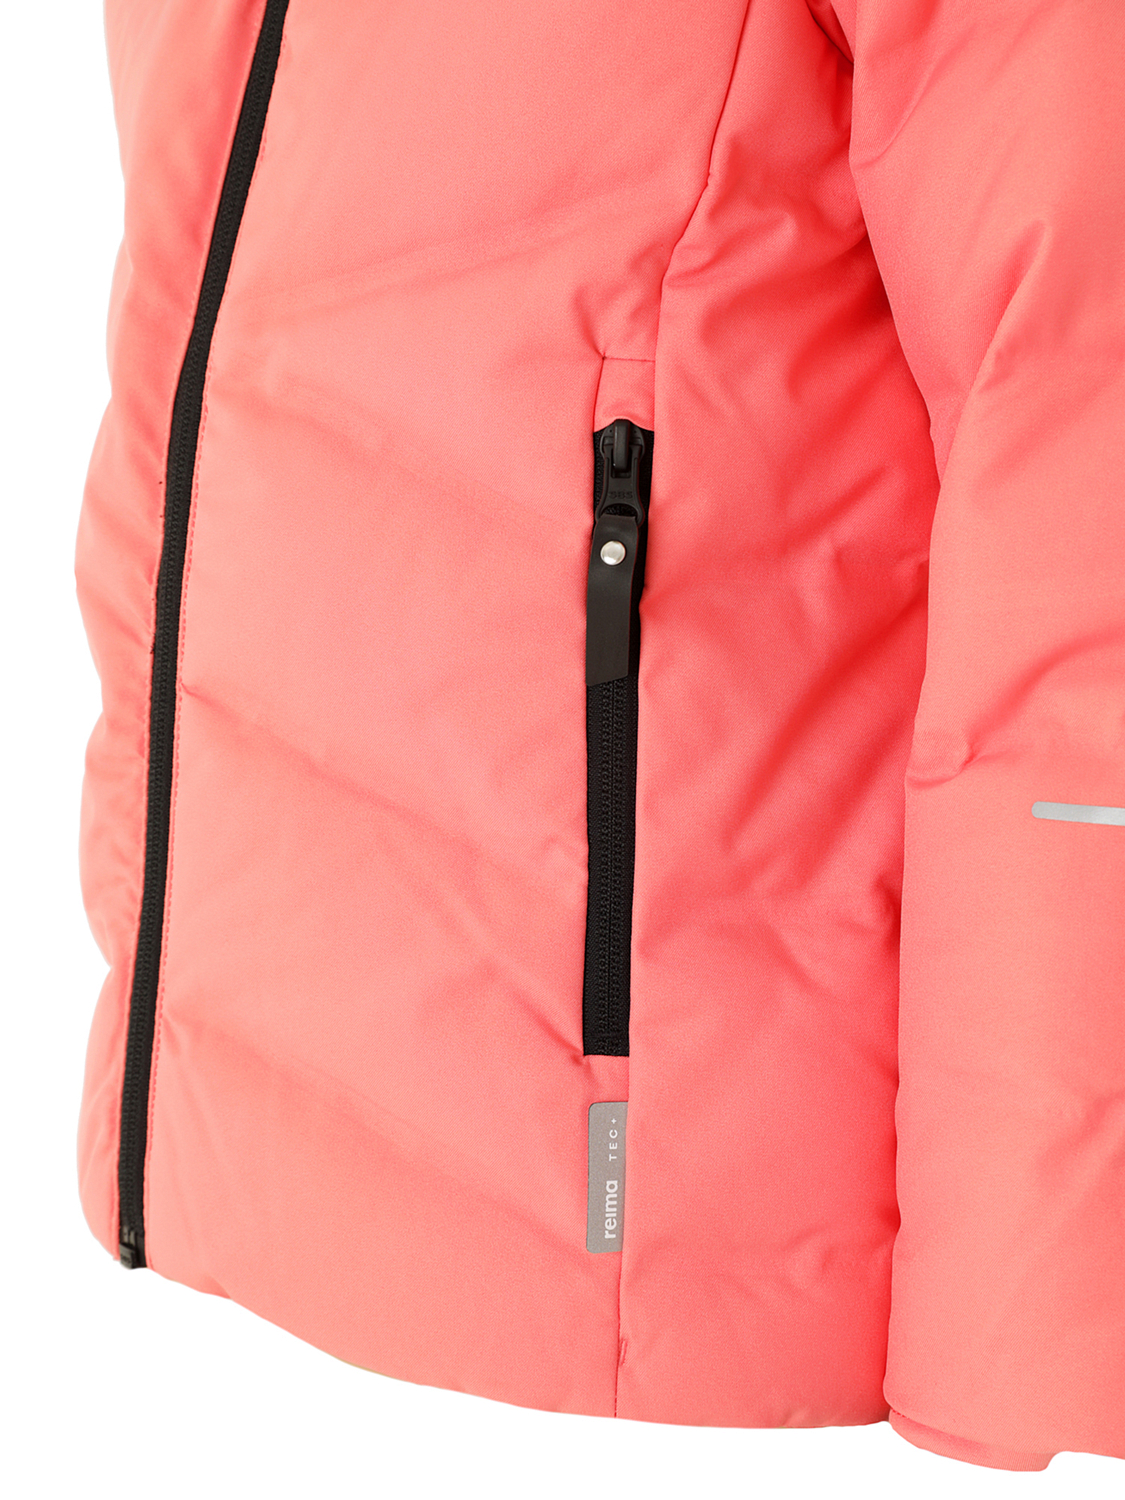 Куртка горнолыжная детская Reima Vuono Pink Coral